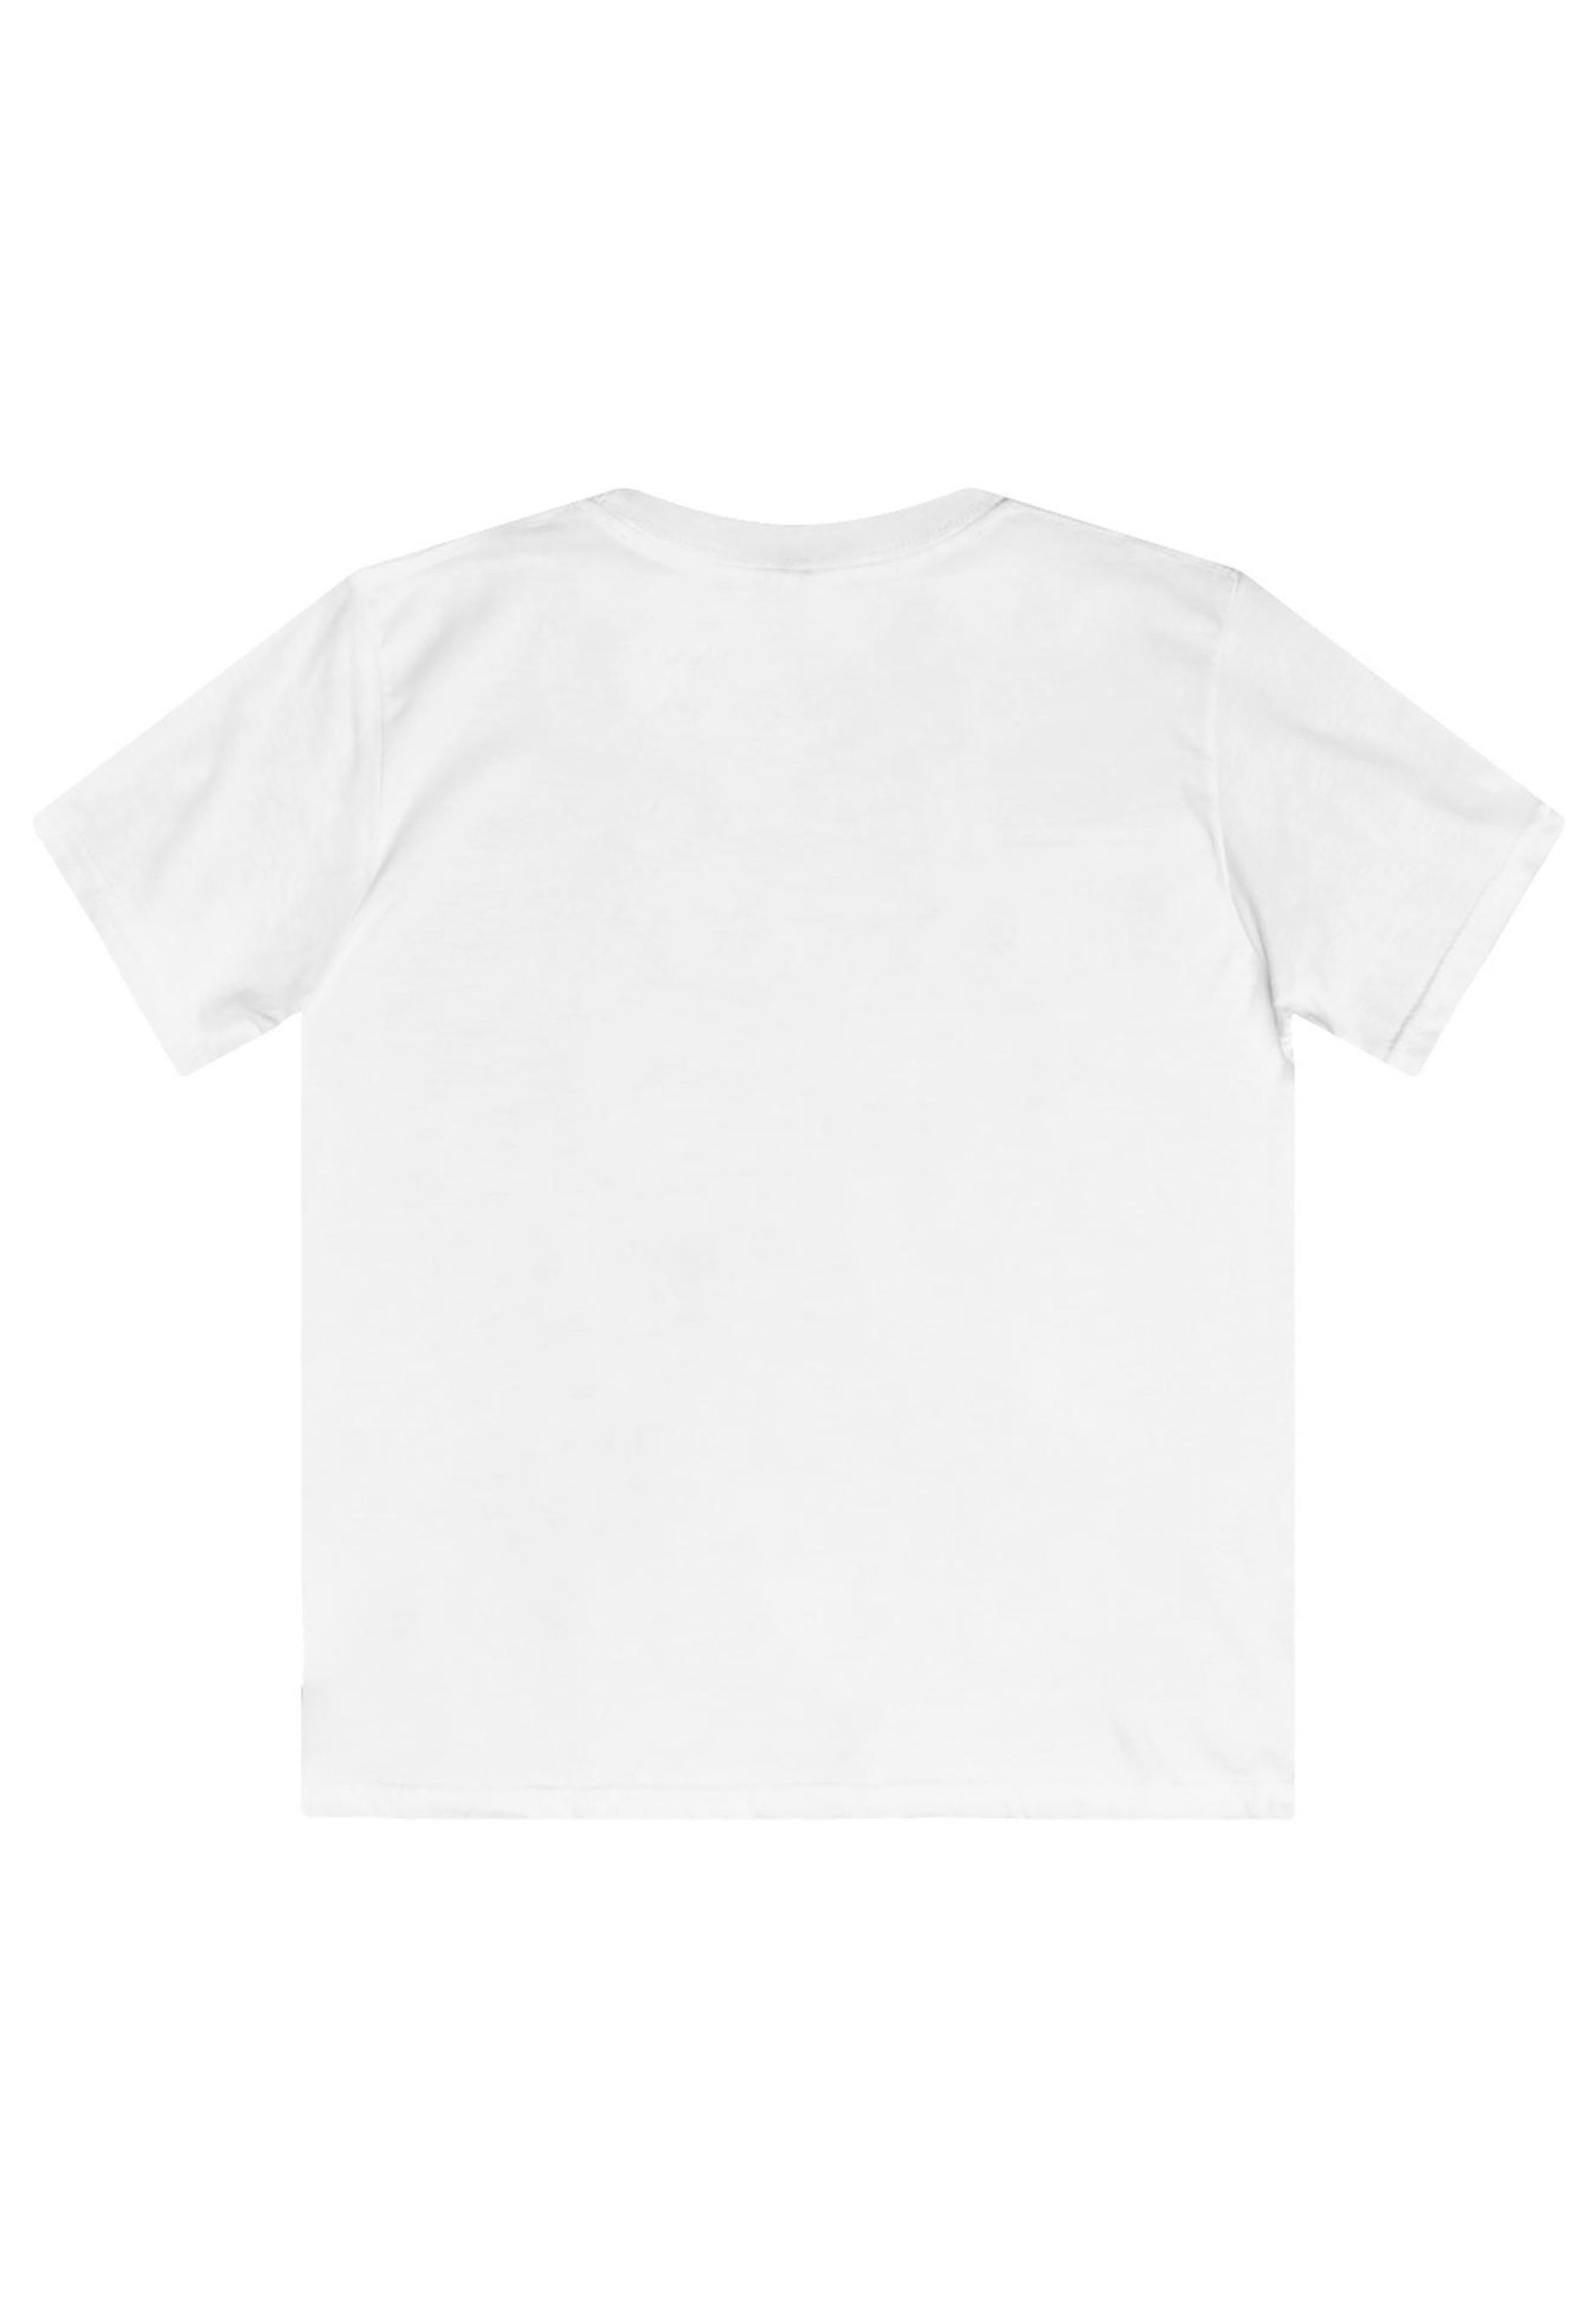 F4NT4STIC T-Shirt Kinder,Premium weiß Merch,Jungen,Mädchen,Bedruckt Disney Lilo Stitch Unisex And